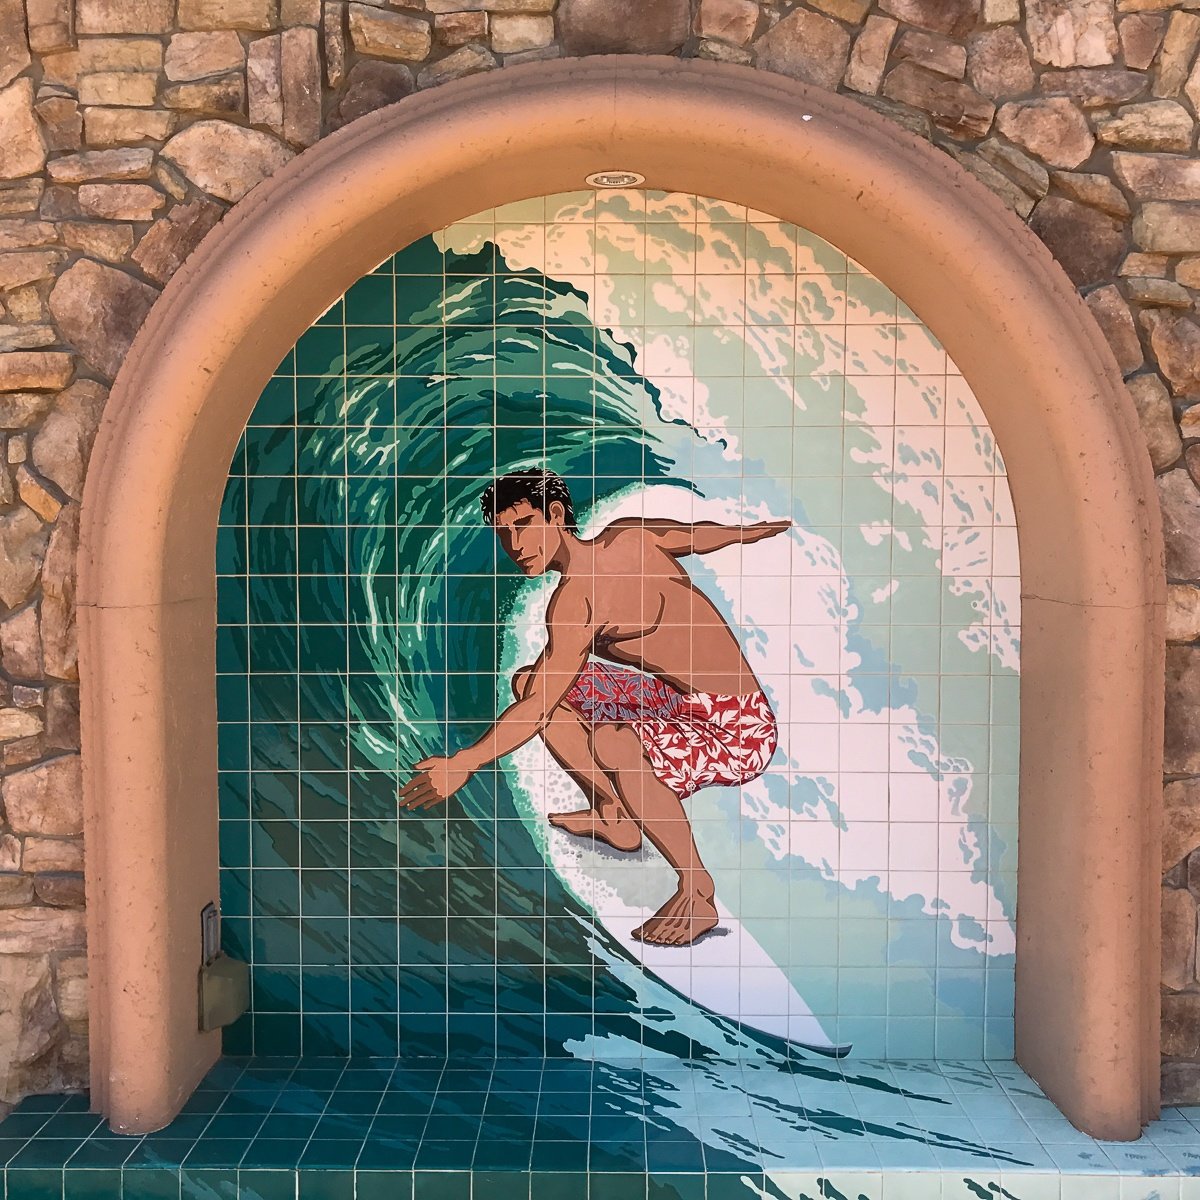 Surfer mosaic art at Hyatt Regency Huntington Beach Resort & Spa